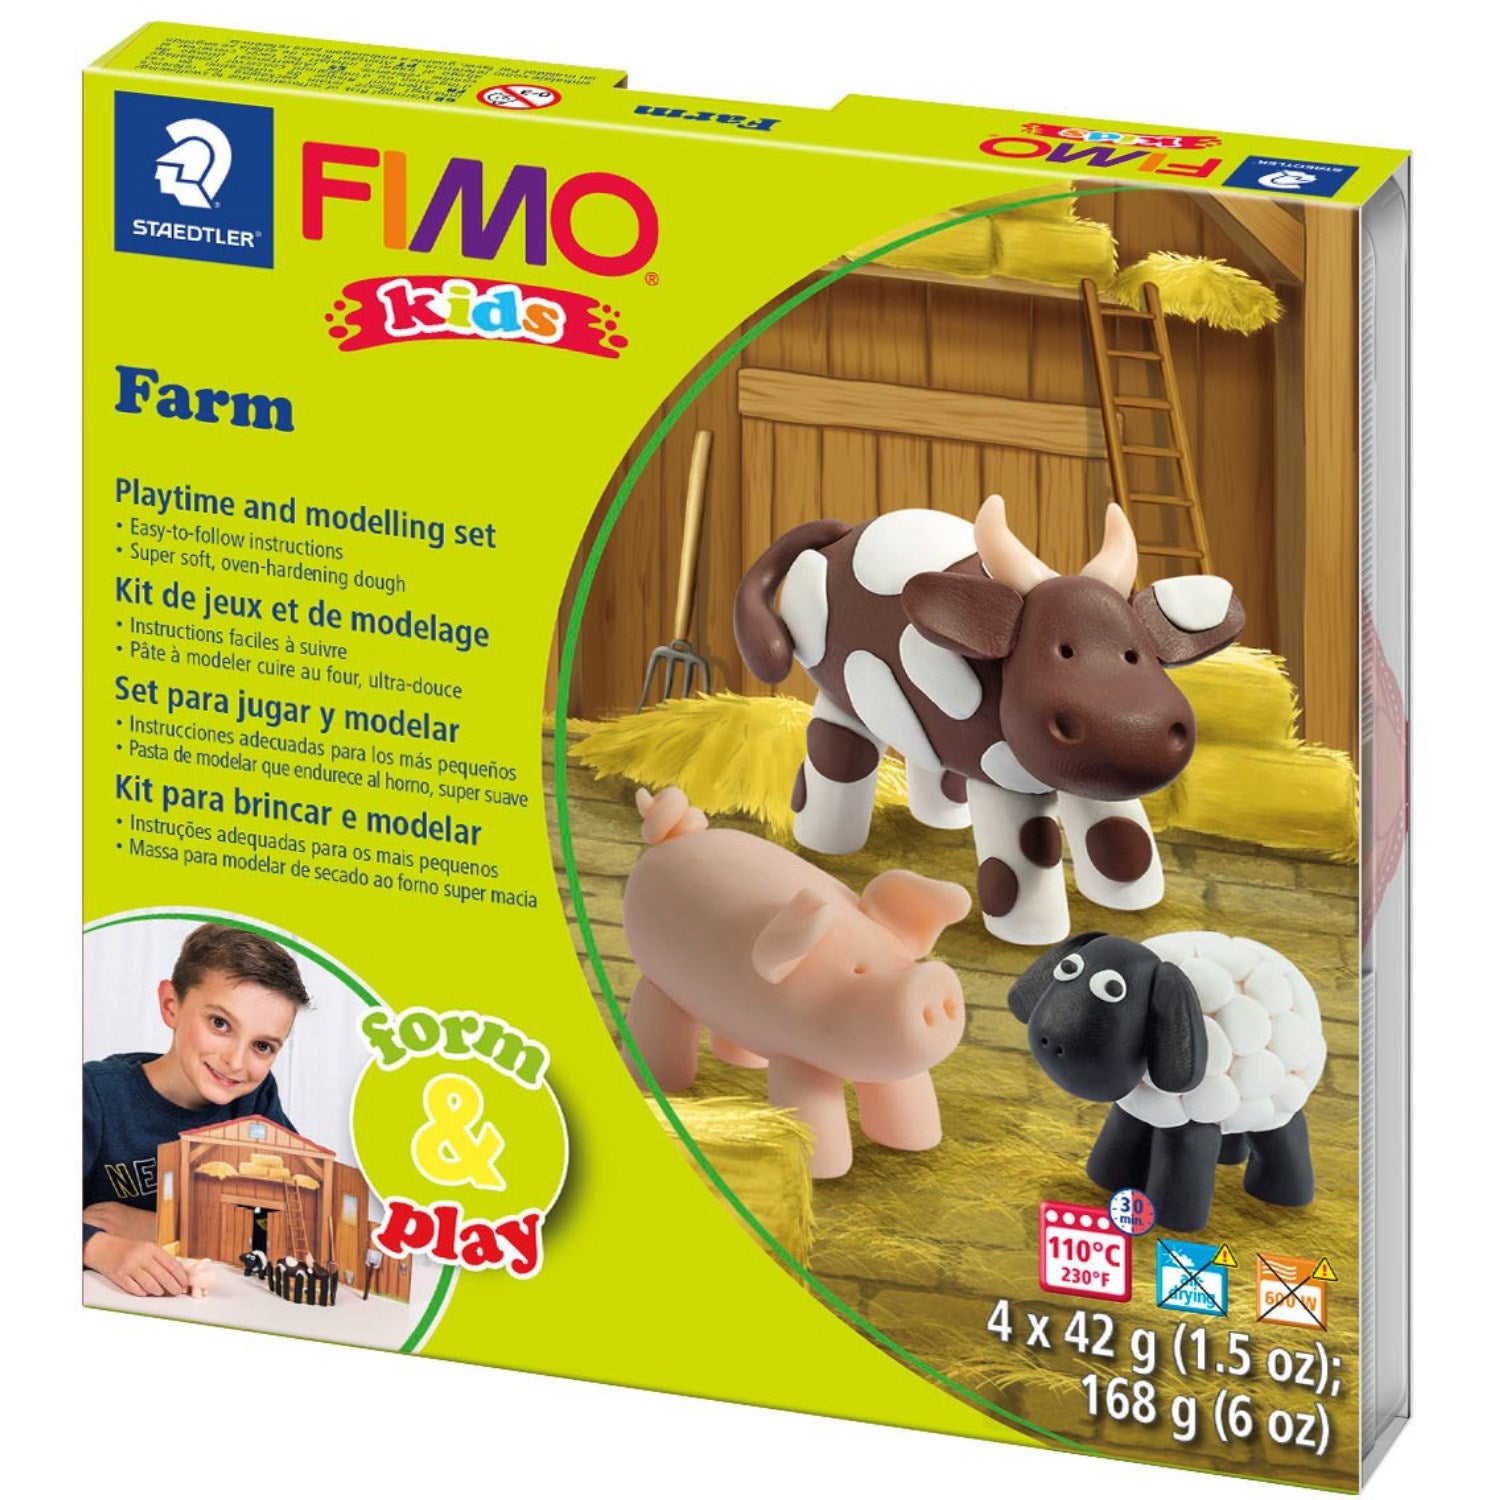 Staedtler Modellera Fimo Kids Farm